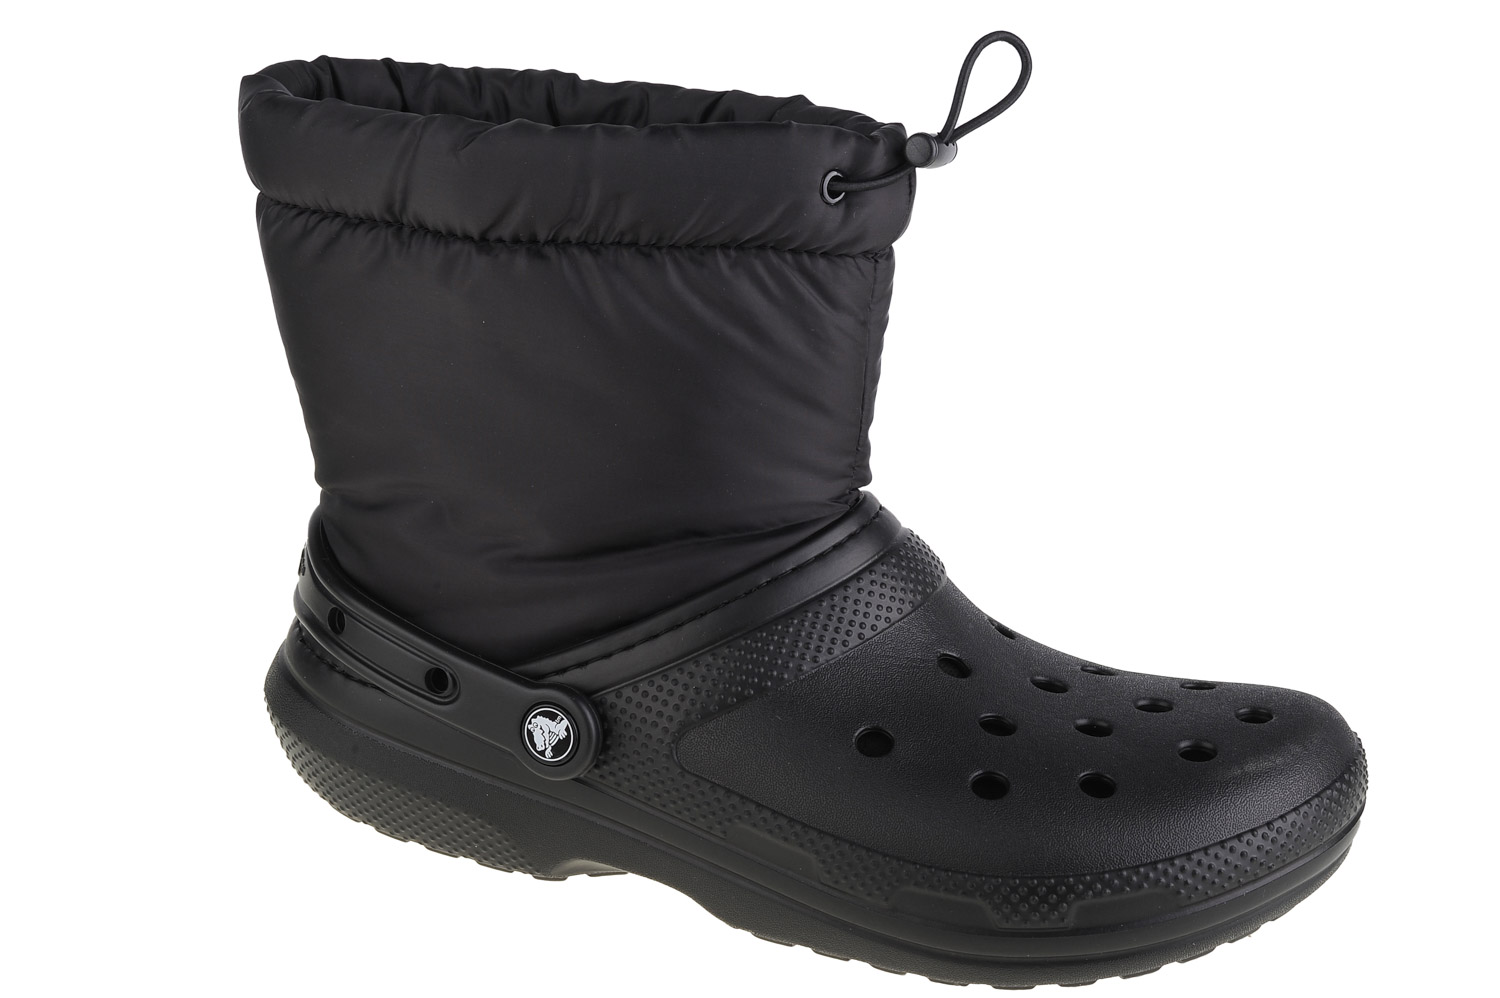 Ботинки Crocs Crocs Classic Lined Neo Puff Boot, черный ботинки classic lined neo puff boot crocs гранат